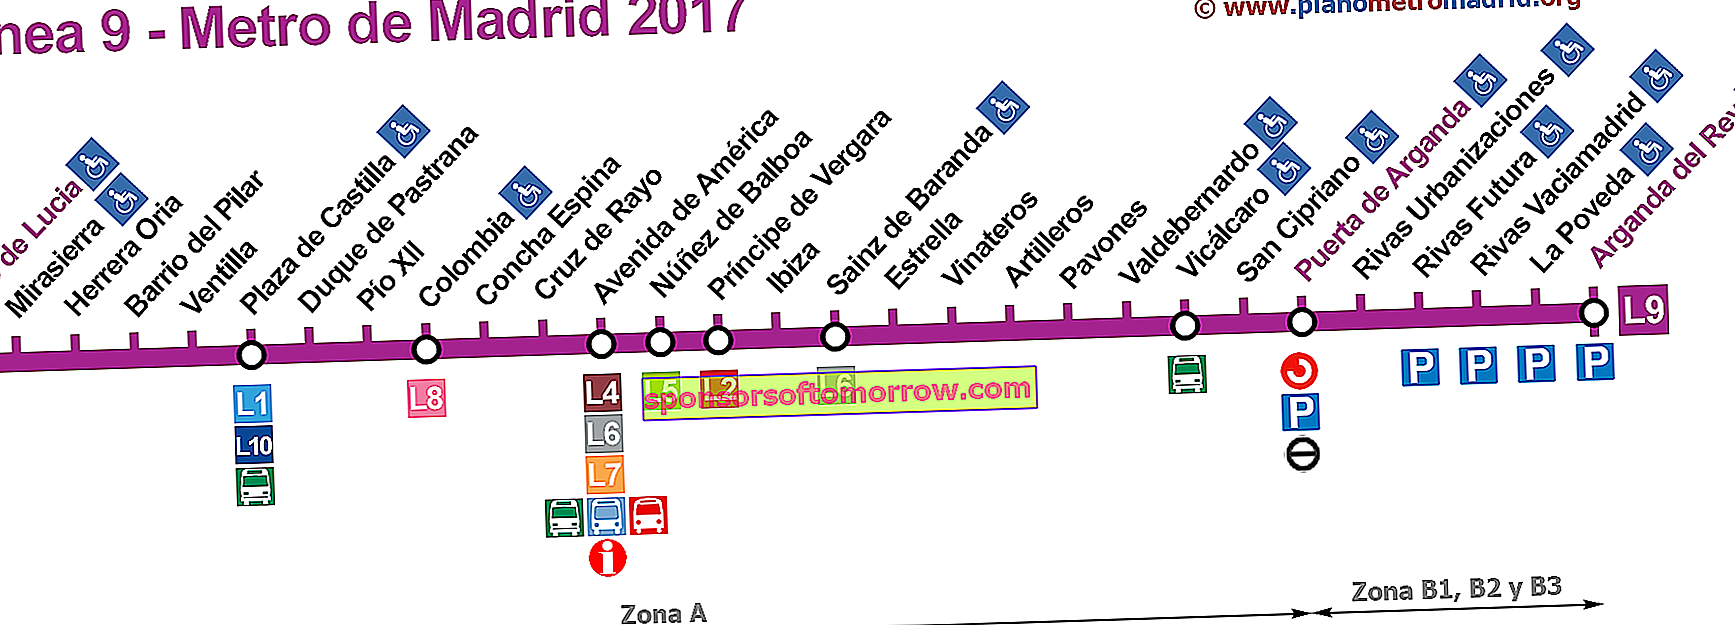 Madrid subway line 9